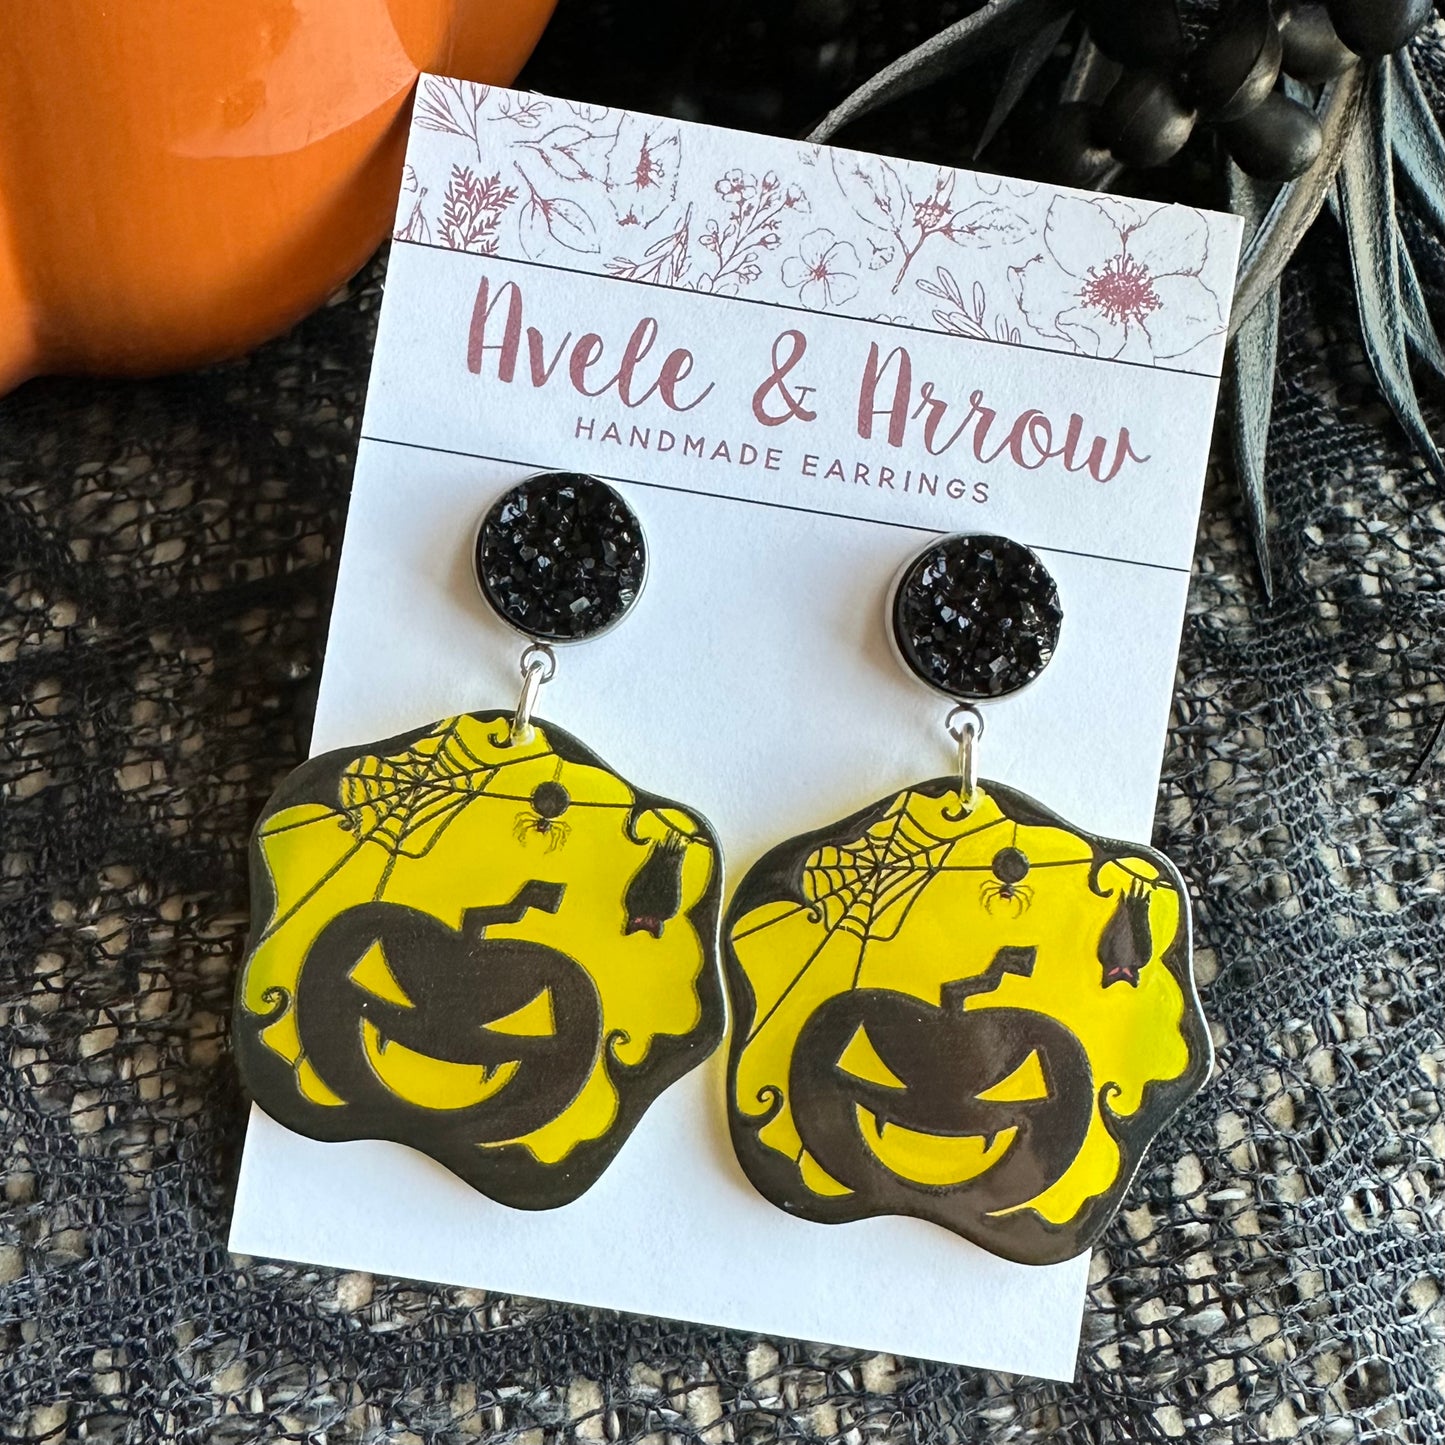 Spooky Pumpkin Earrings